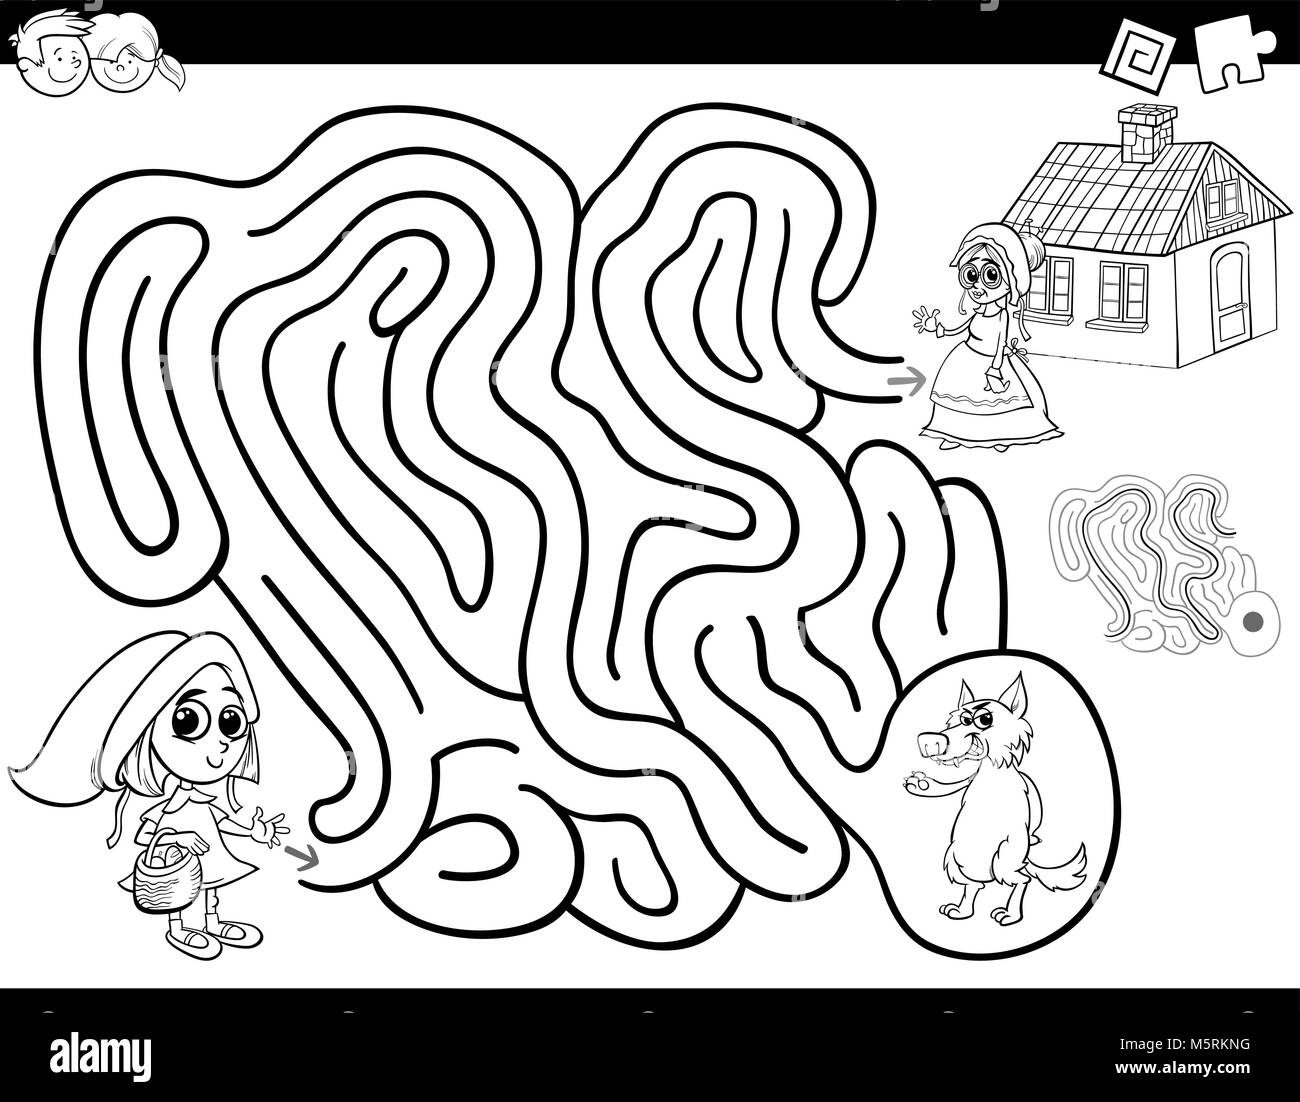 Schwarze und Weiße Cartoon Illustration für Bildung Labyrinth oder Irrgarten Aktivität Spiel für Kinder mit Rotkäppchen Malbuch Stock Vektor